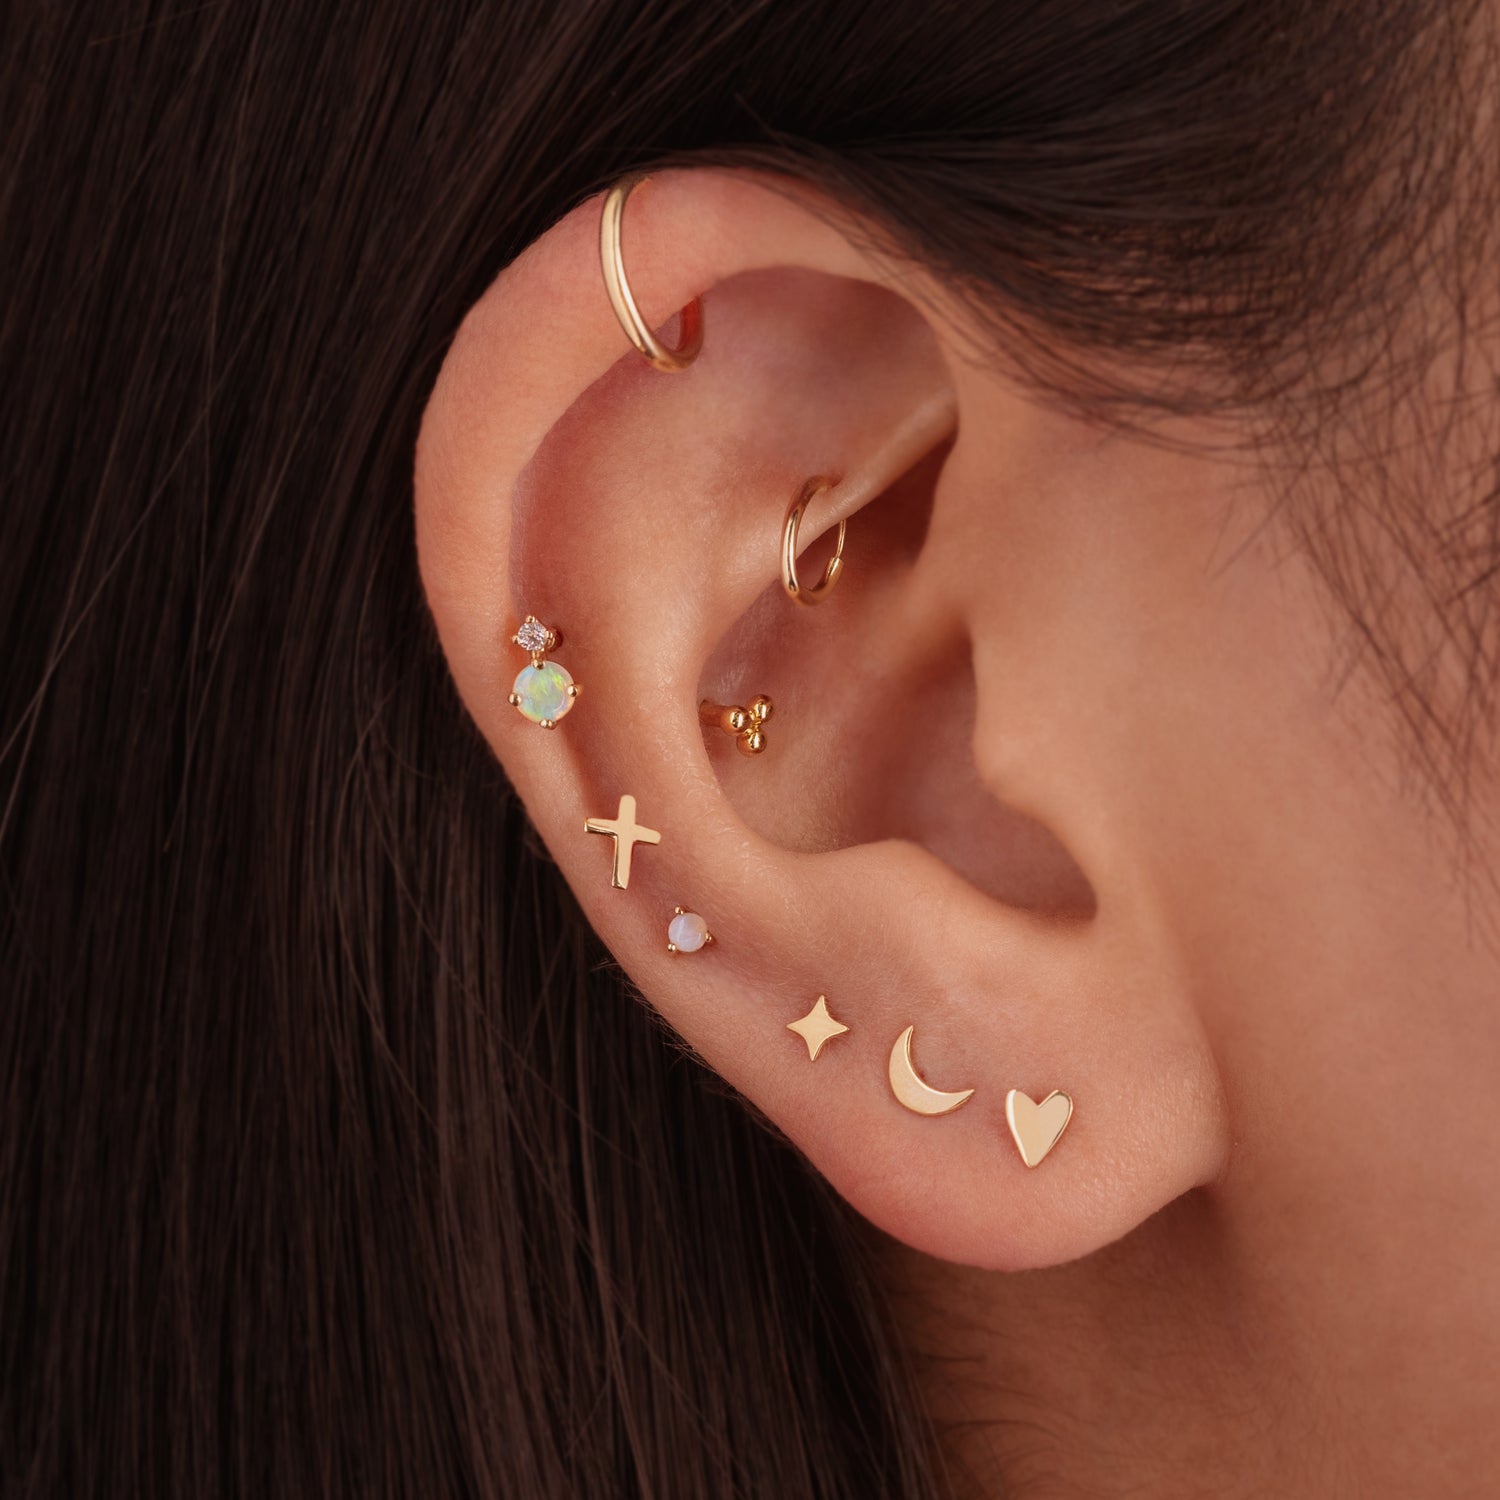 J&CO Jewellery Baby Hoop Earrings